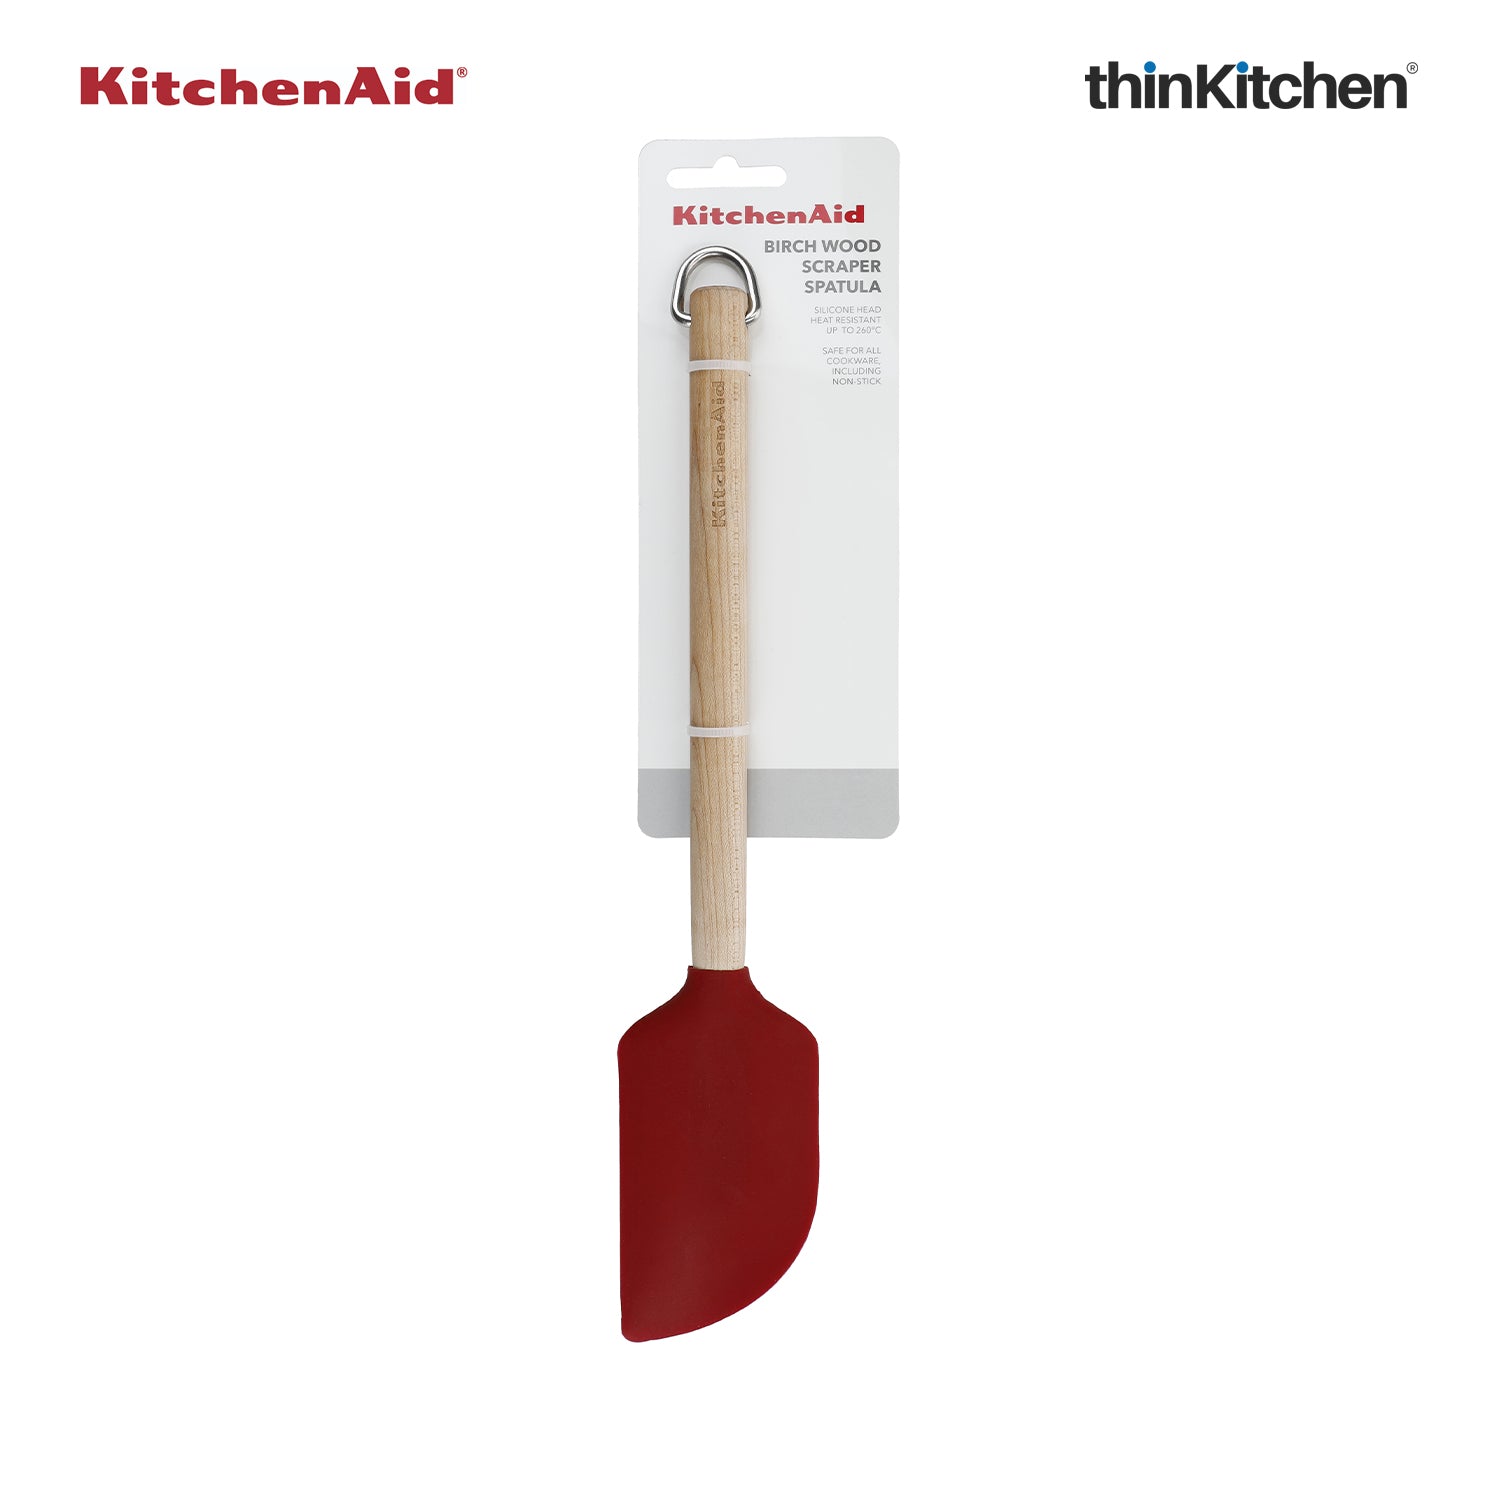 KitchenAid Birchwood Scraper Spatula with Silicone Head - Empire Re